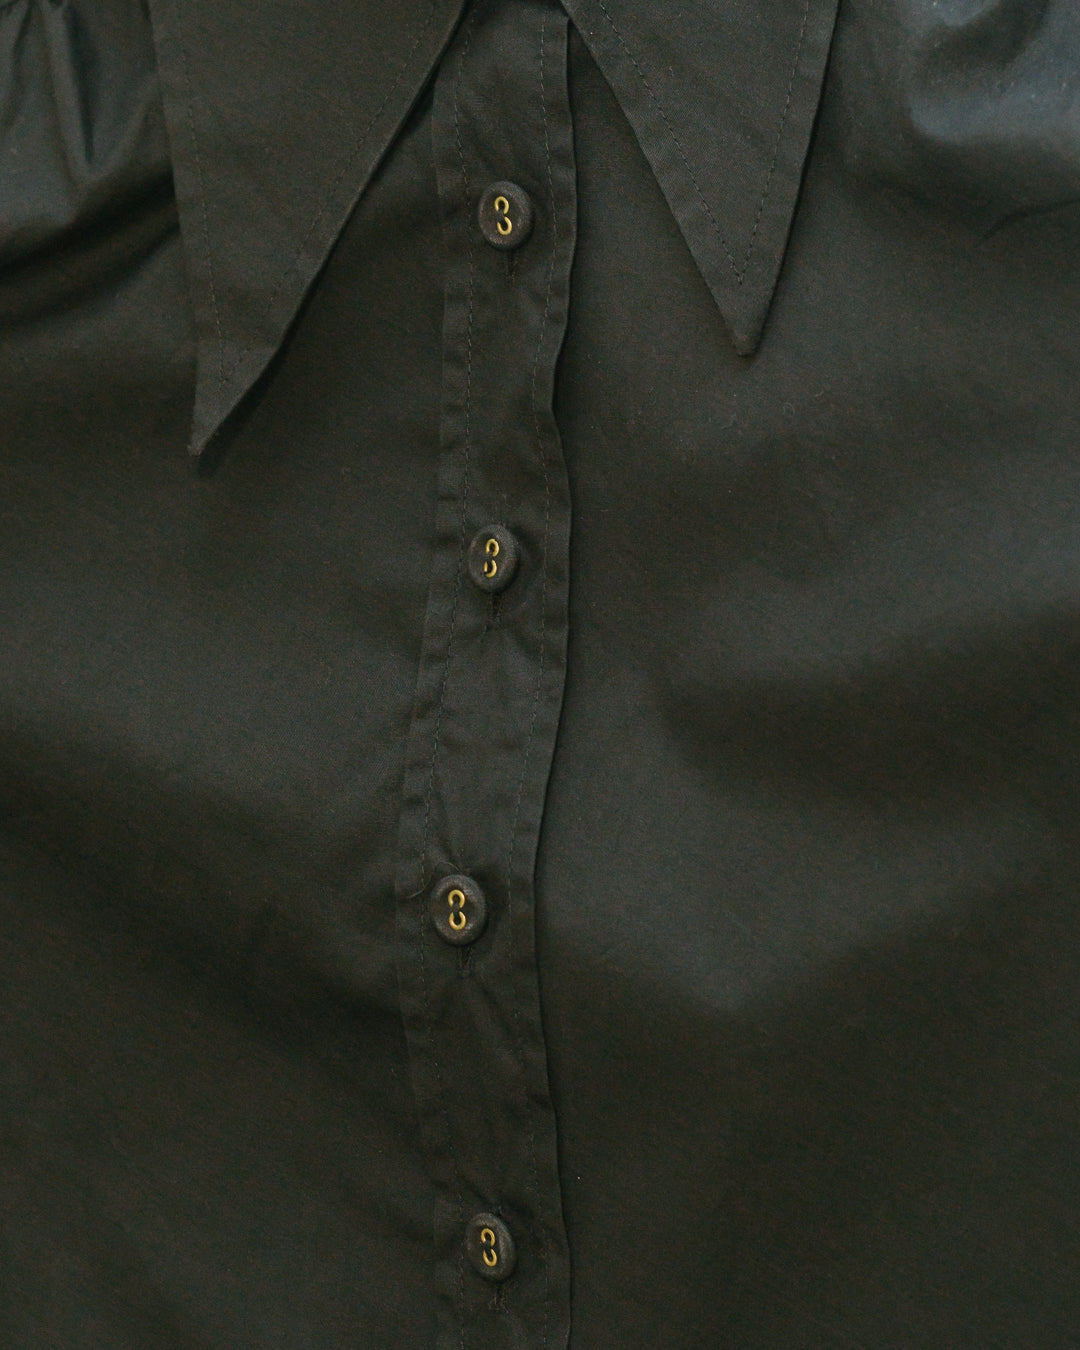 90s vintage balenciaga shirt